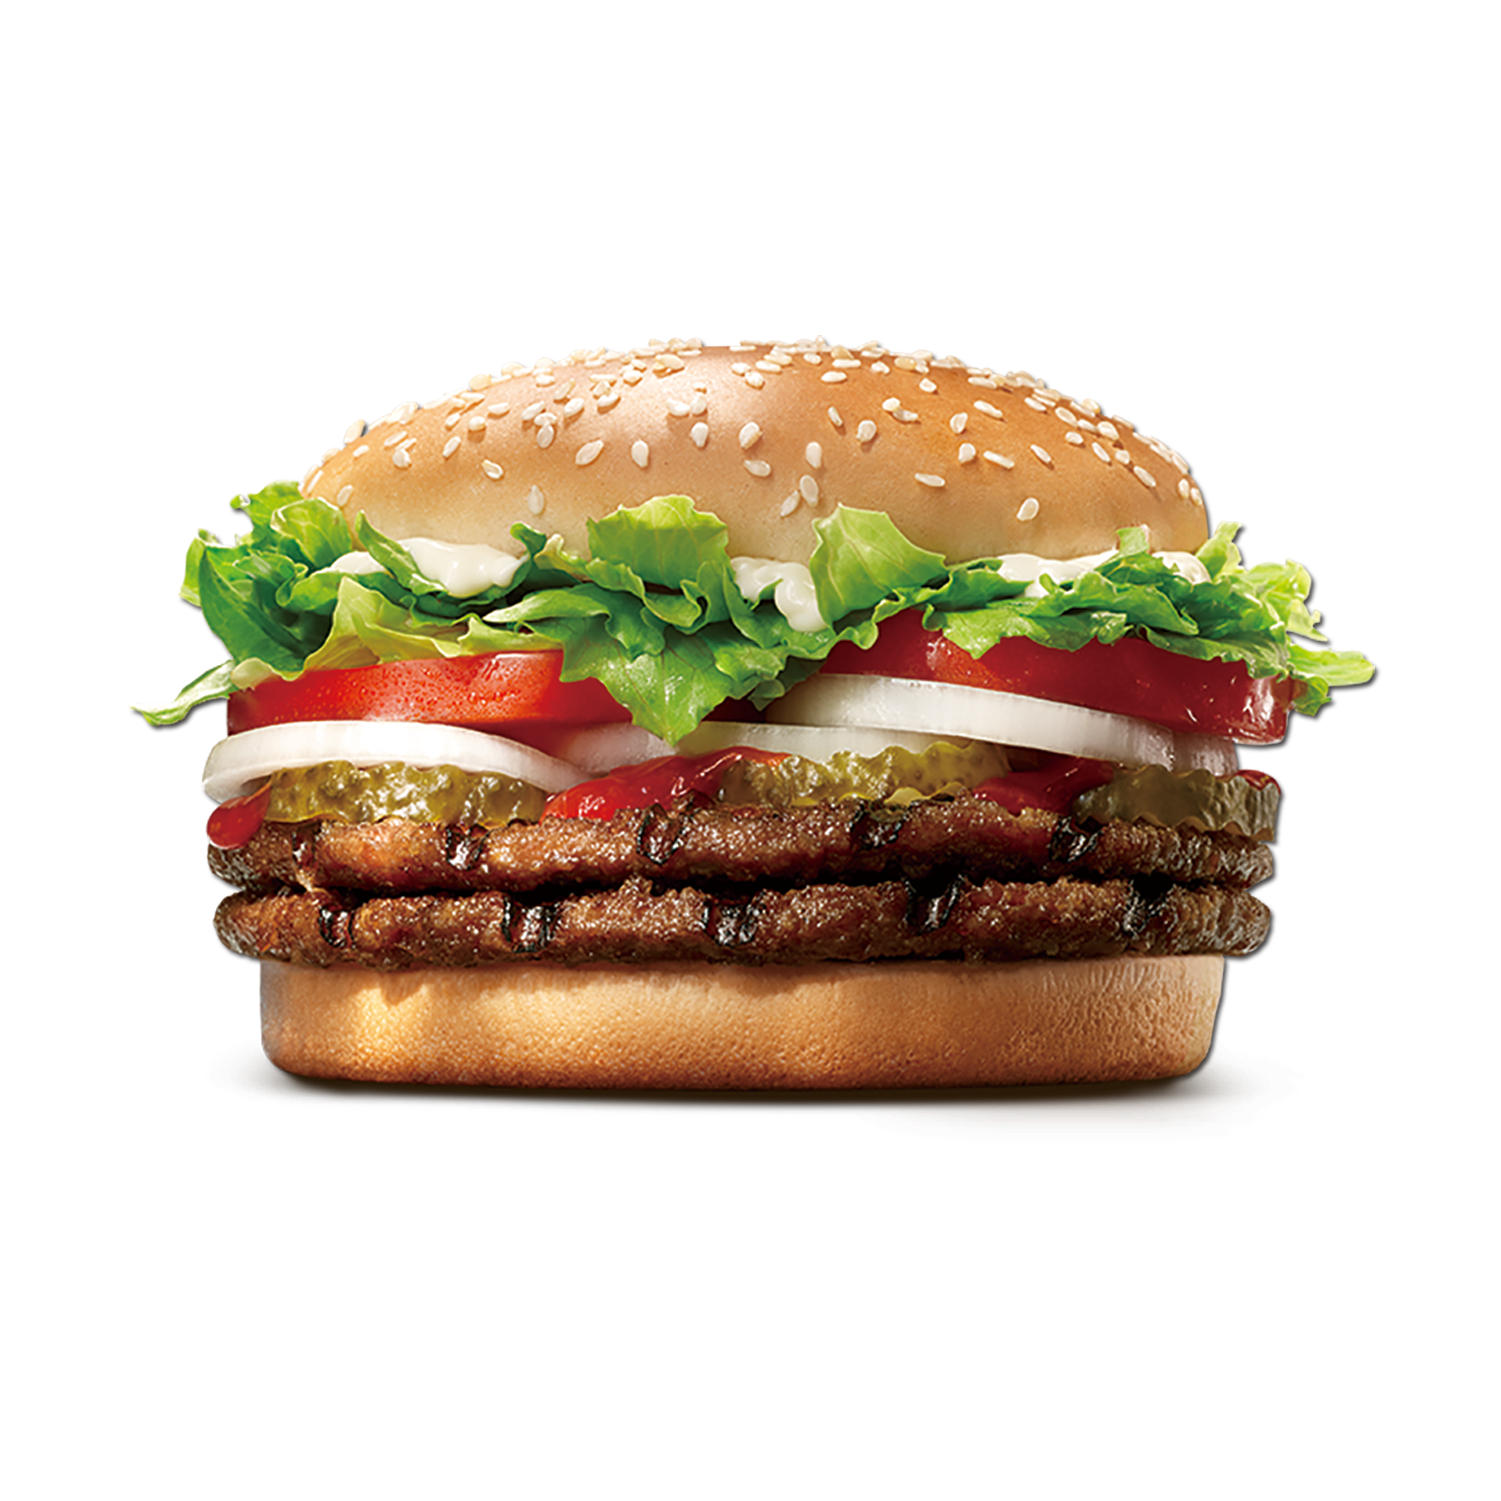 Download King Whopper Hamburger Burgers Food Cheeseburger Fast HQ